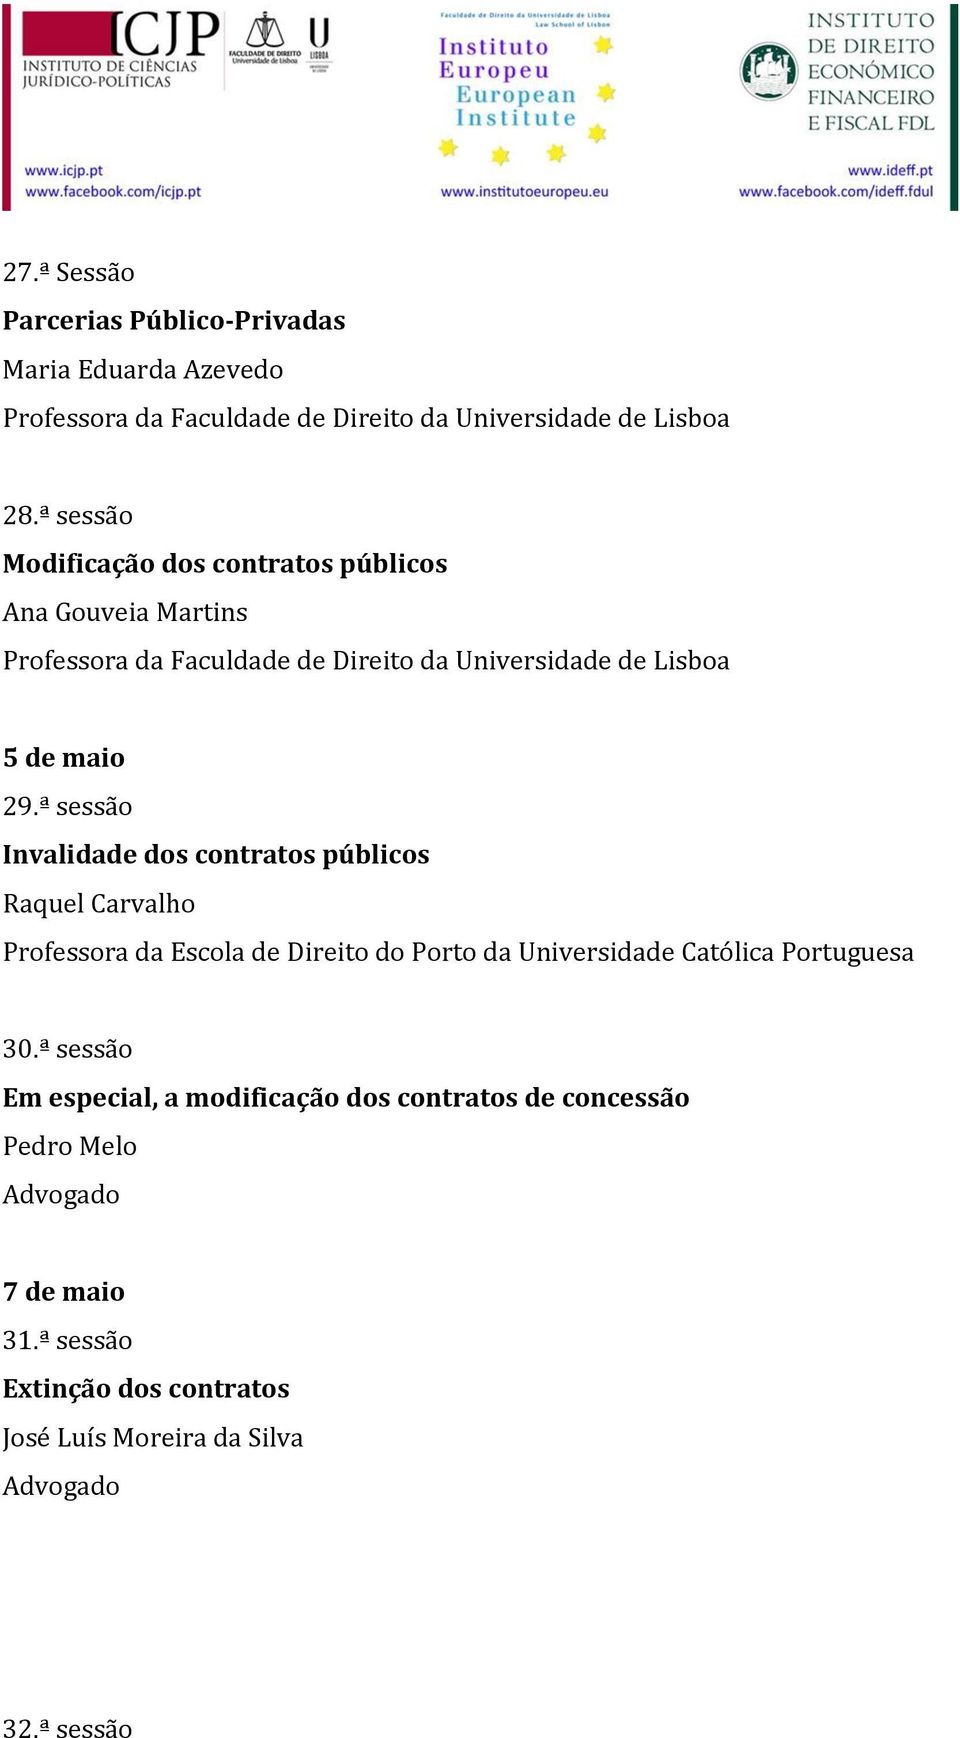 ª sessão Invalidade dos contratos públicos Raquel Carvalho Professora da Escola de Direito do Porto da